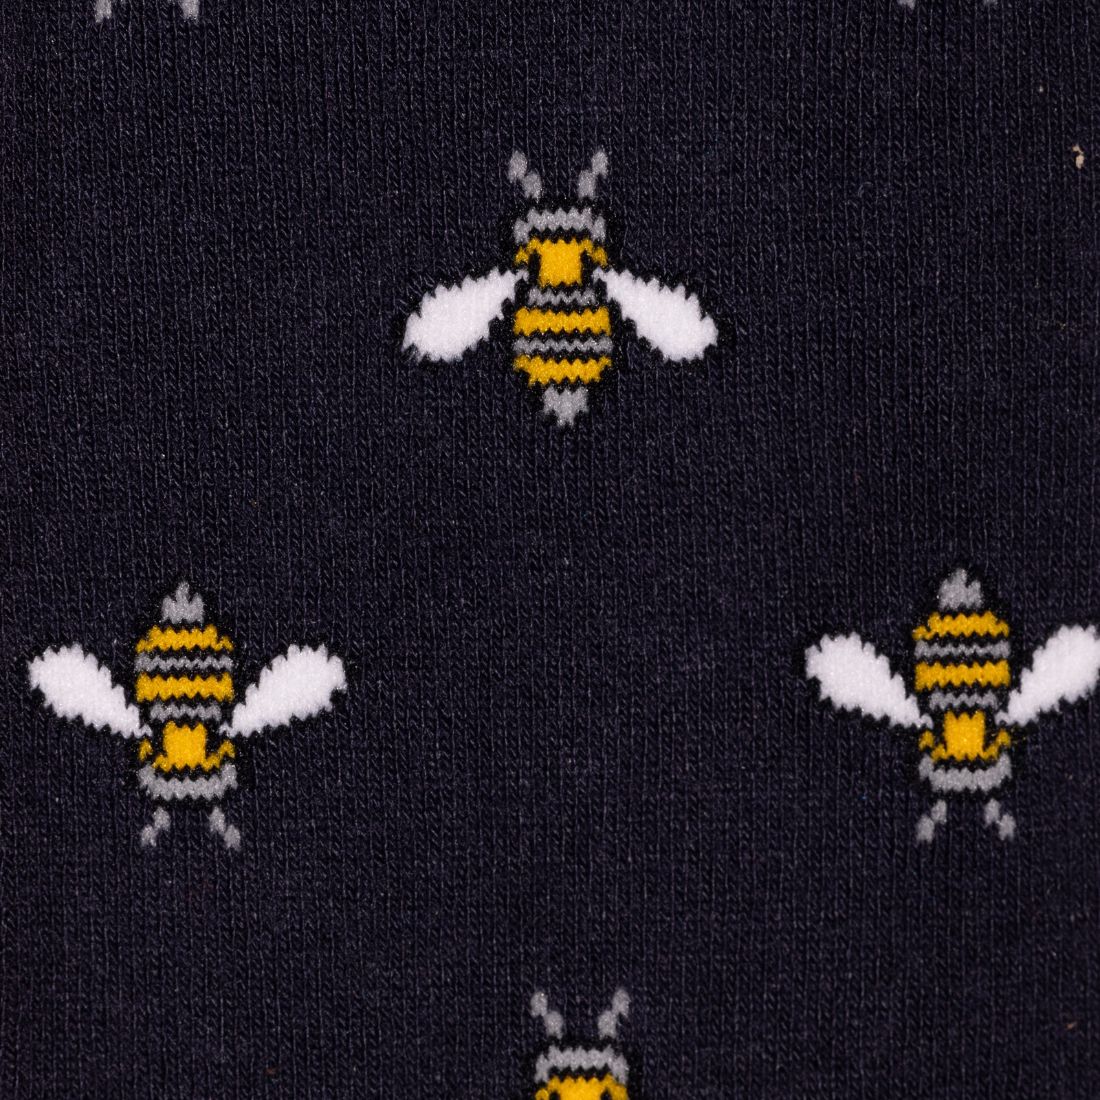 Navy Bumblebee Bamboo Socks (Comfort Cuff)